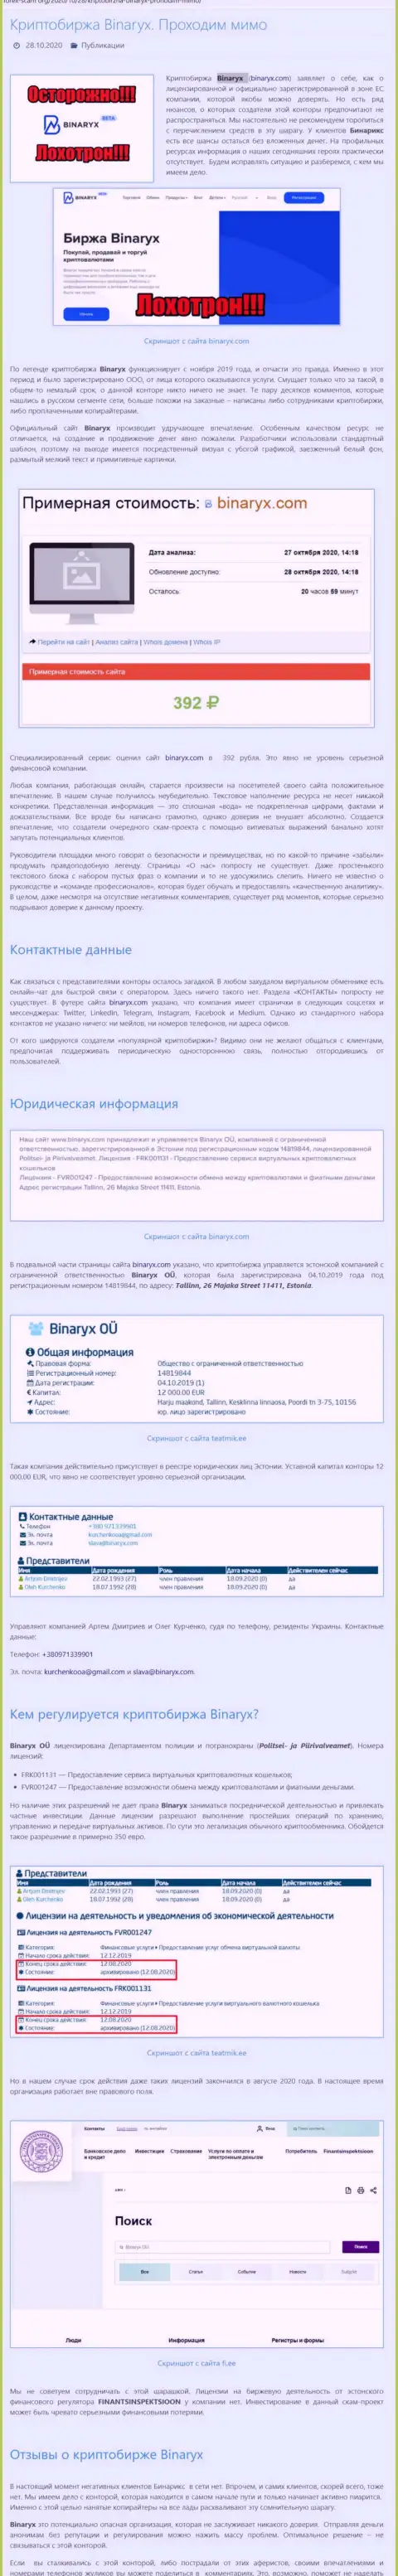 Binaryx Com - это АФЕРИСТЫ !!! Кража вложенных денег гарантируют стопроцентно (обзор мошеннических действий конторы)